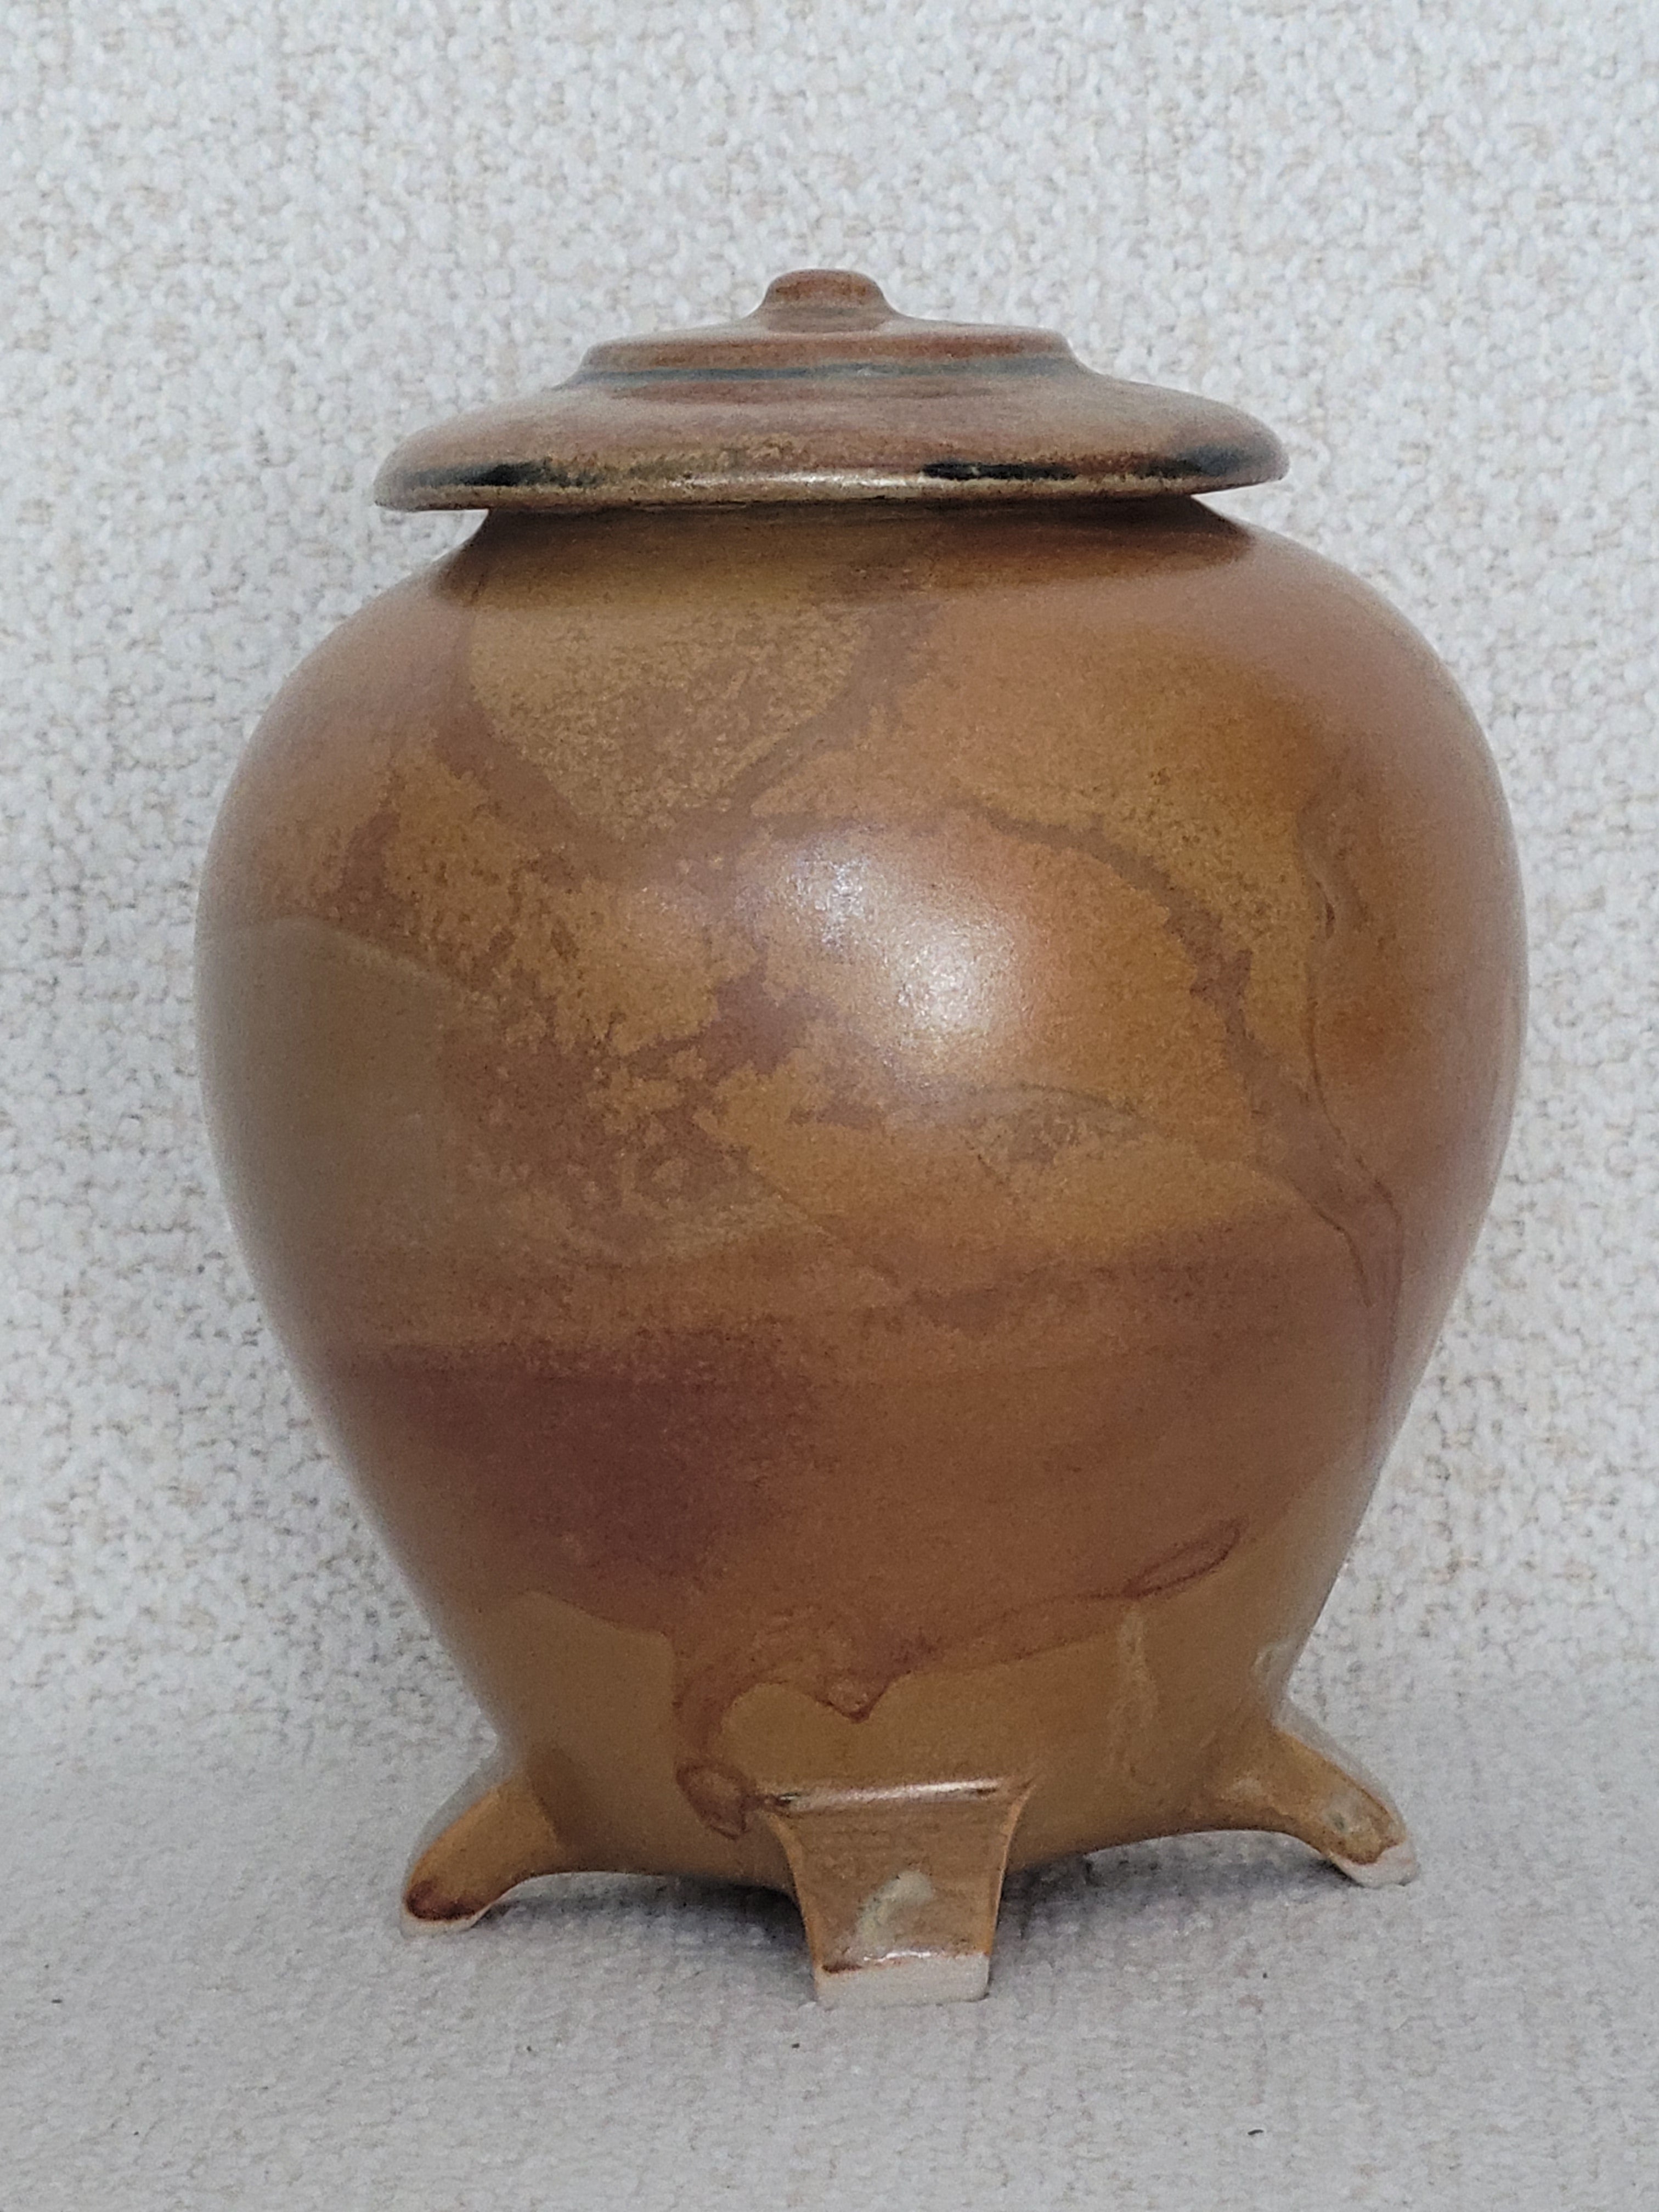 Fine ceramic vase / jar by Allen Anderson